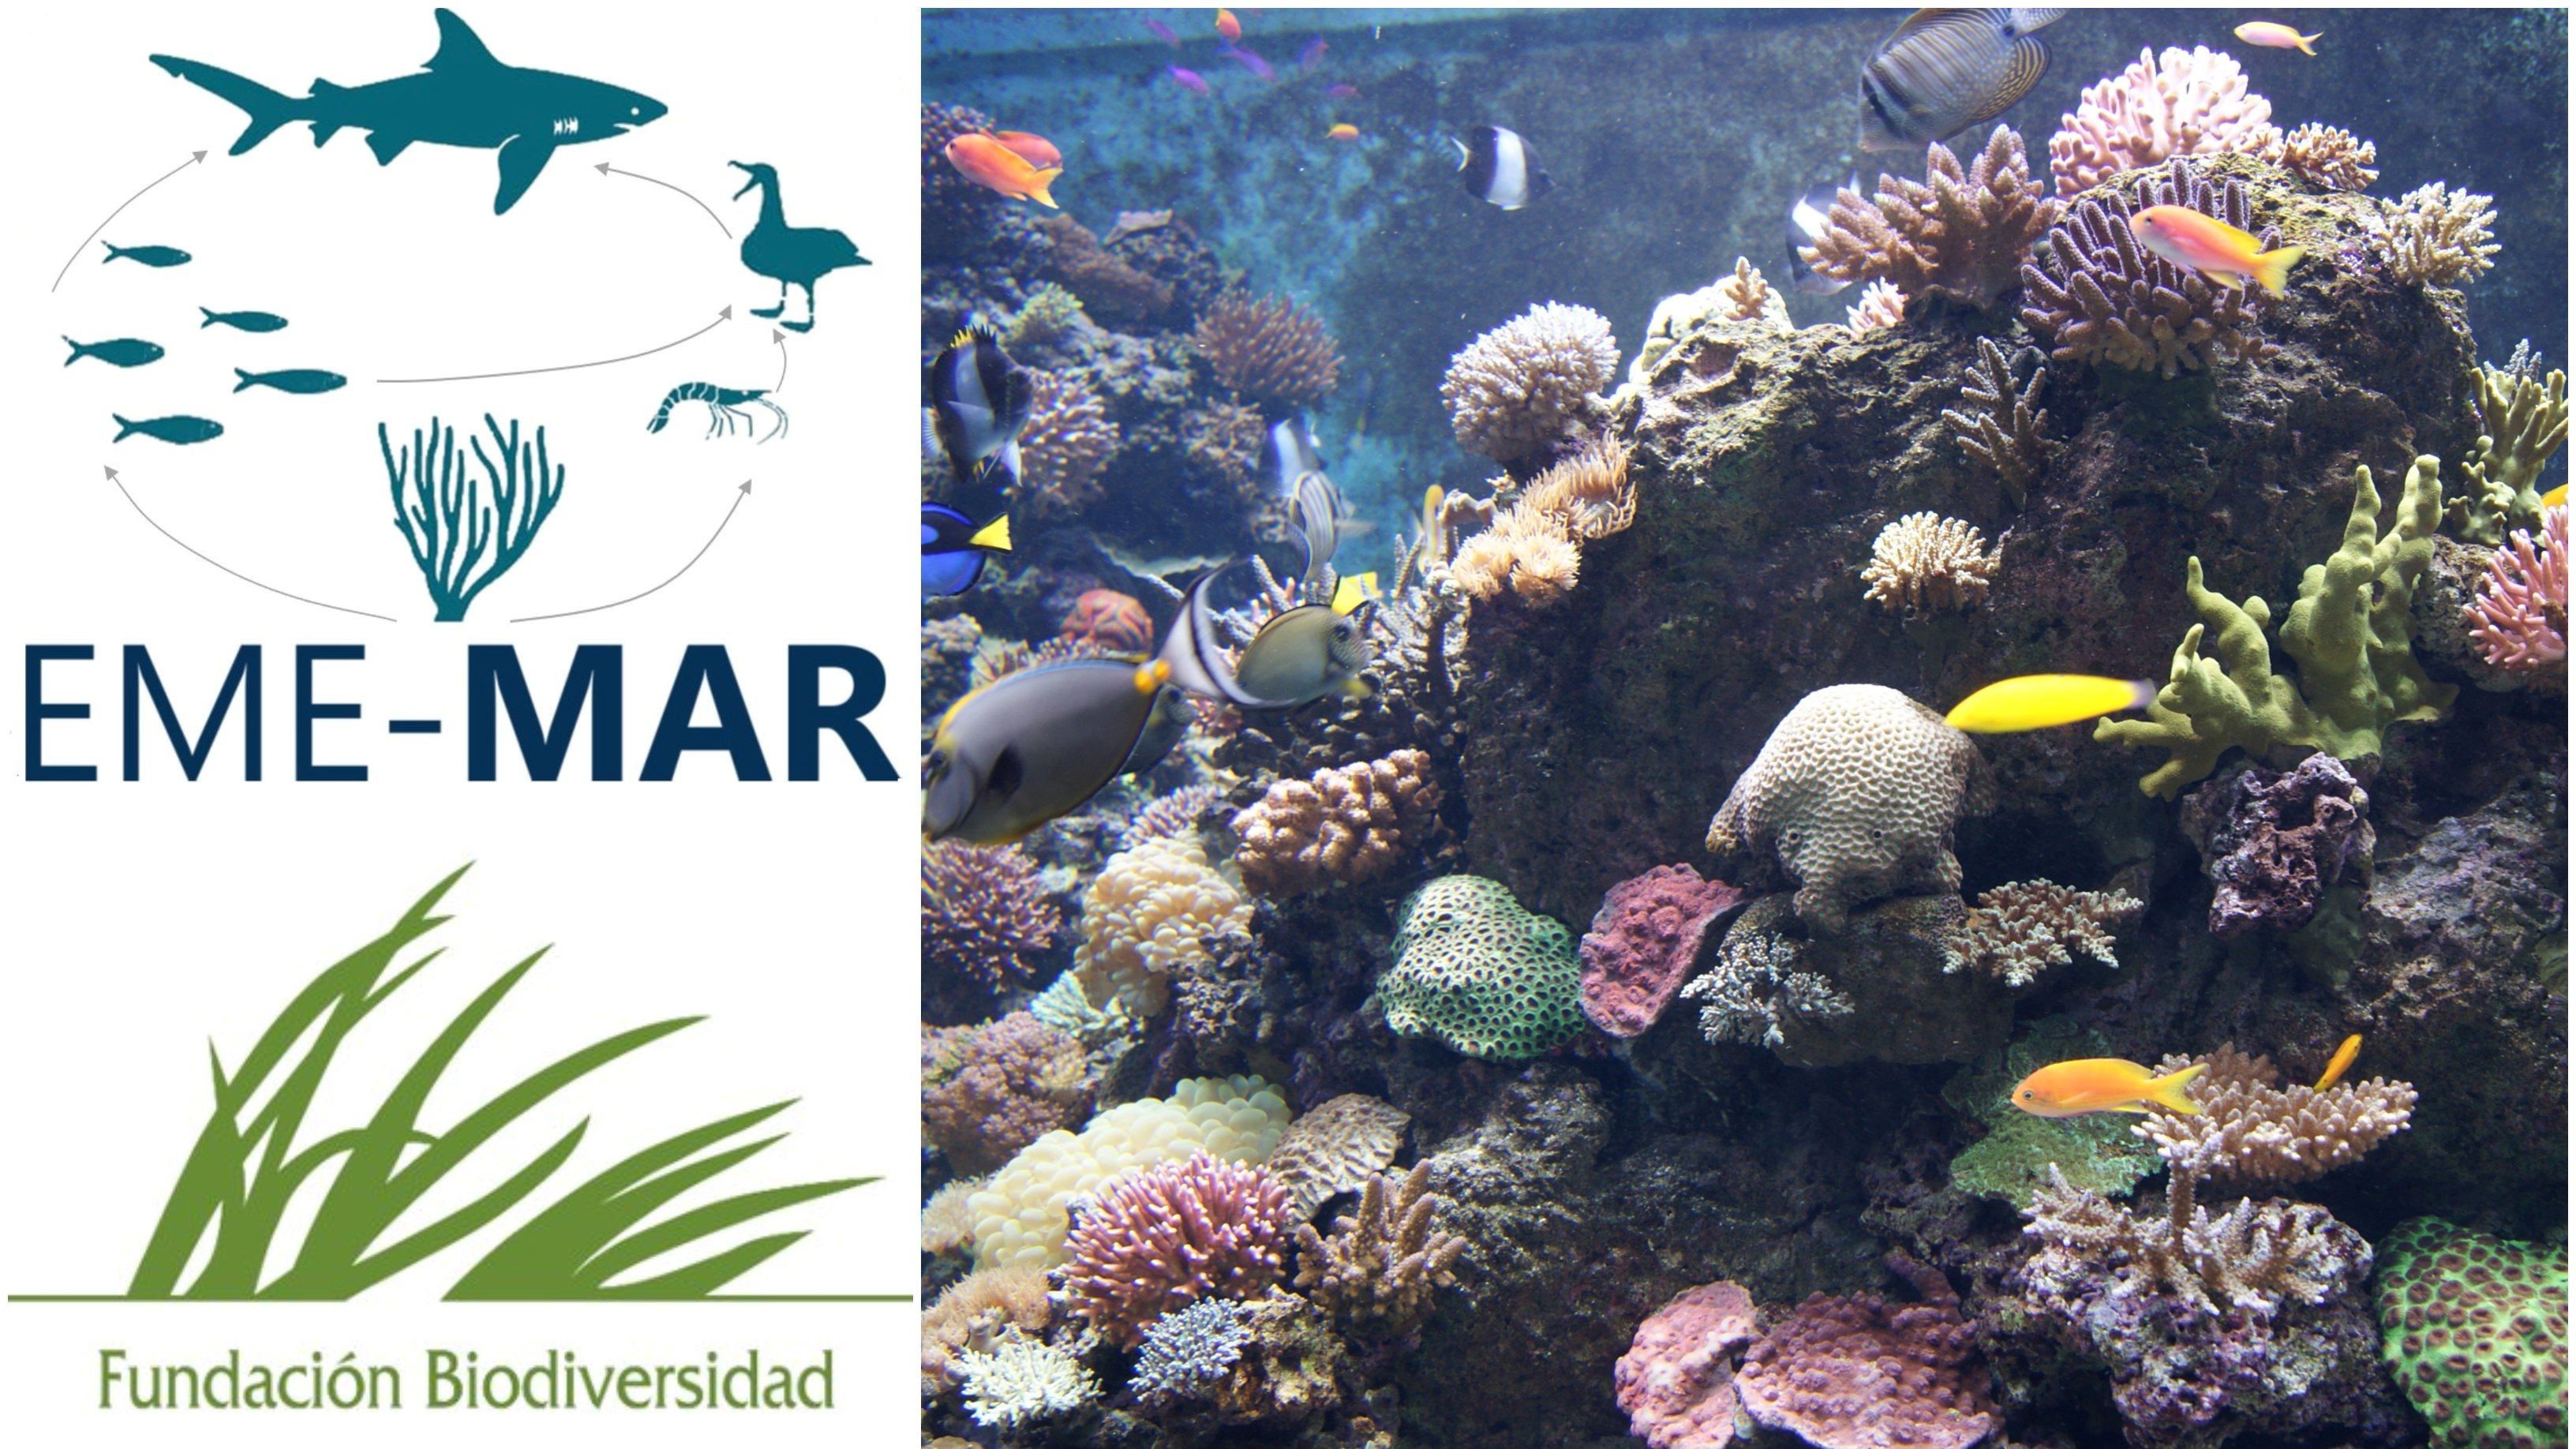 Imagen de un arrecife marino y logos del proyecto y la Fundación Biodiversidad